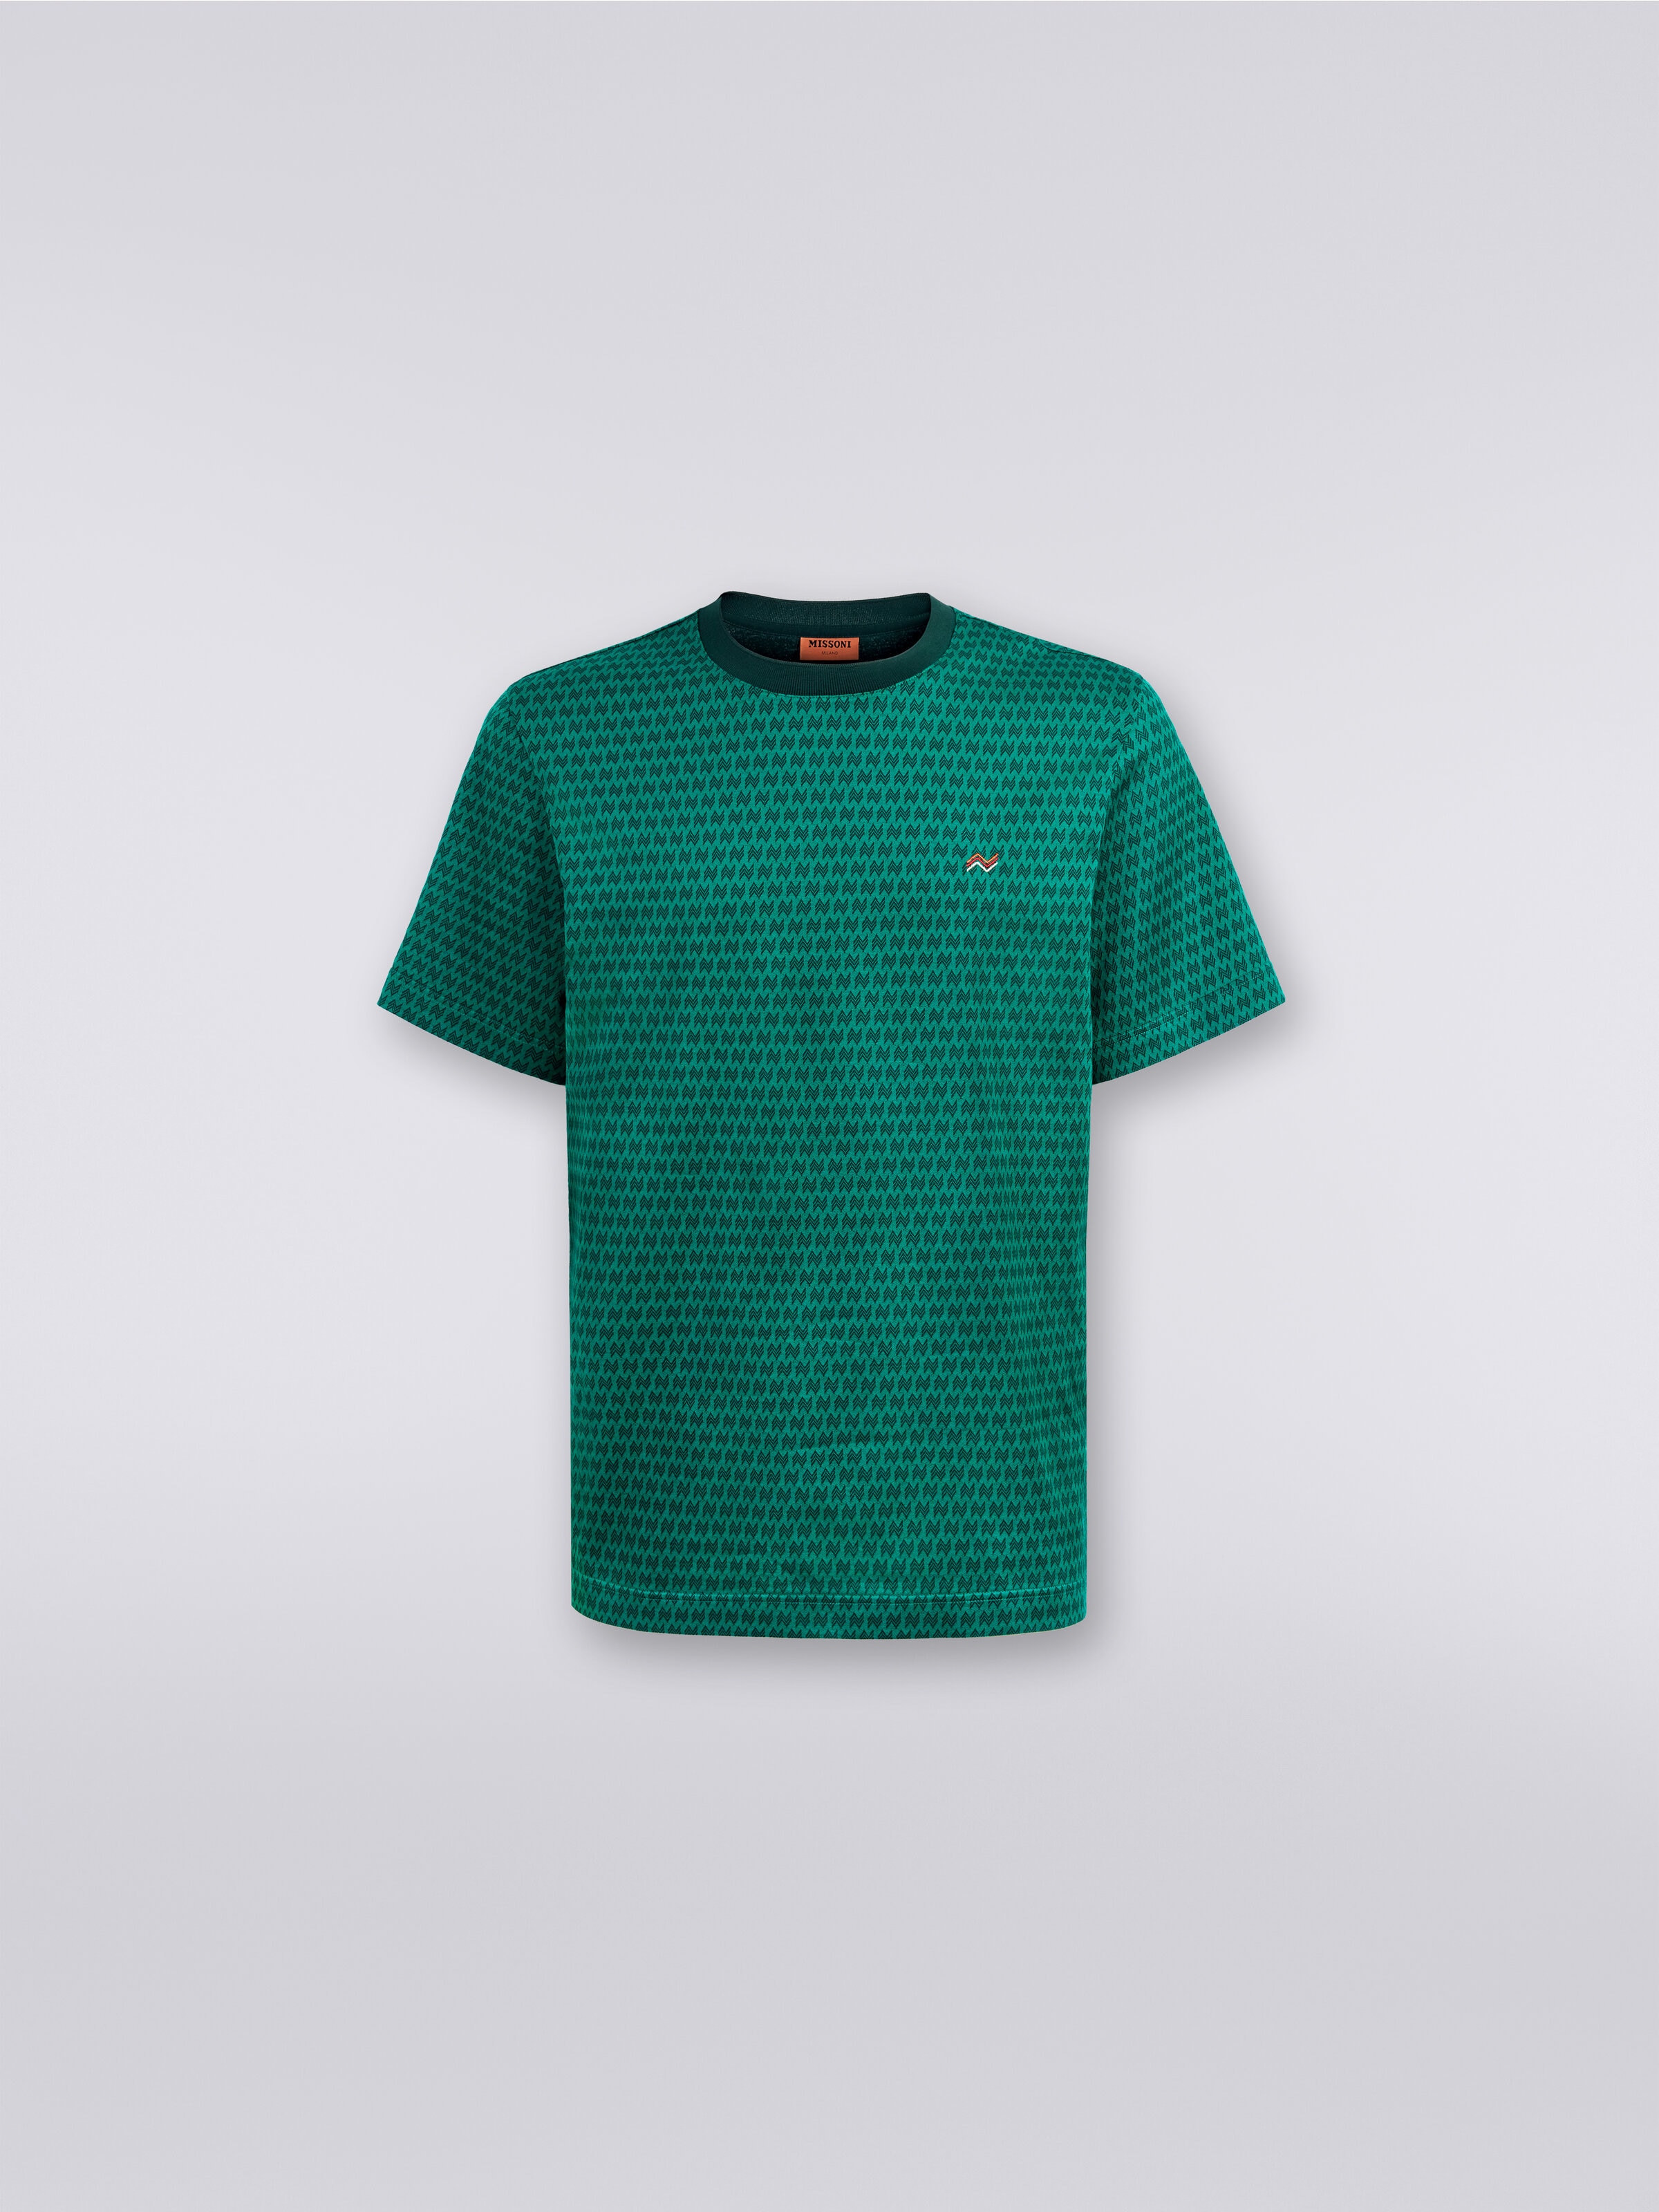 Camiseta de cuello redondo de algodón con bordados, Verde  - 0